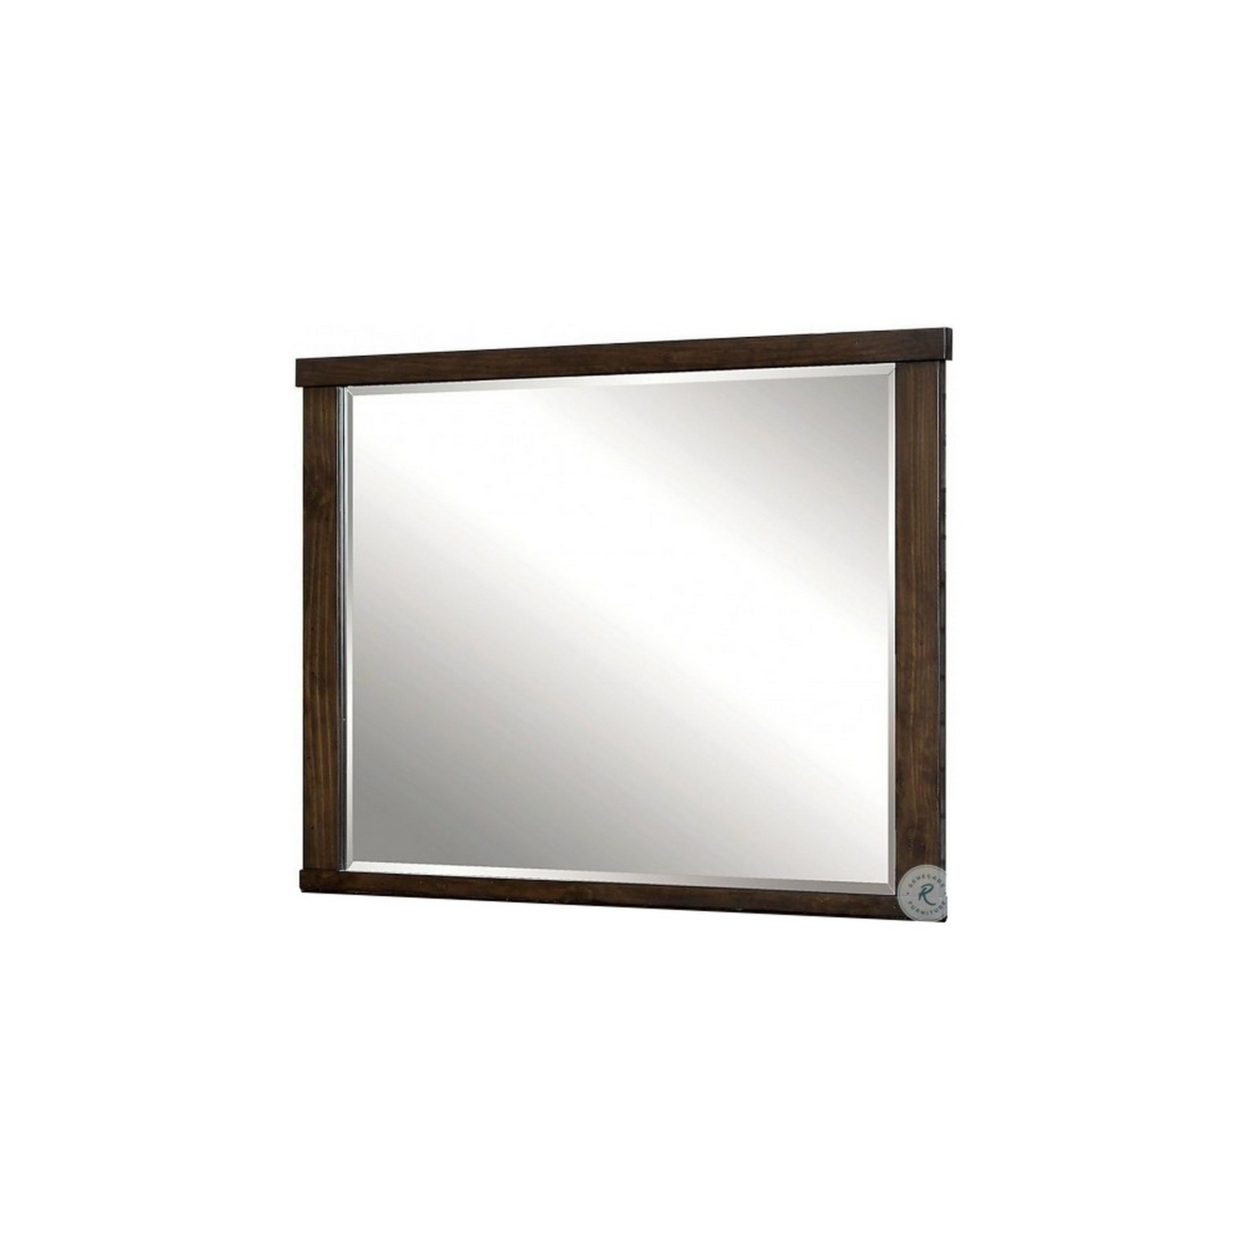 Rectangular Wooden Frame Mirror With Mounting Hardware, Walnut Brown- Saltoro Sherpi